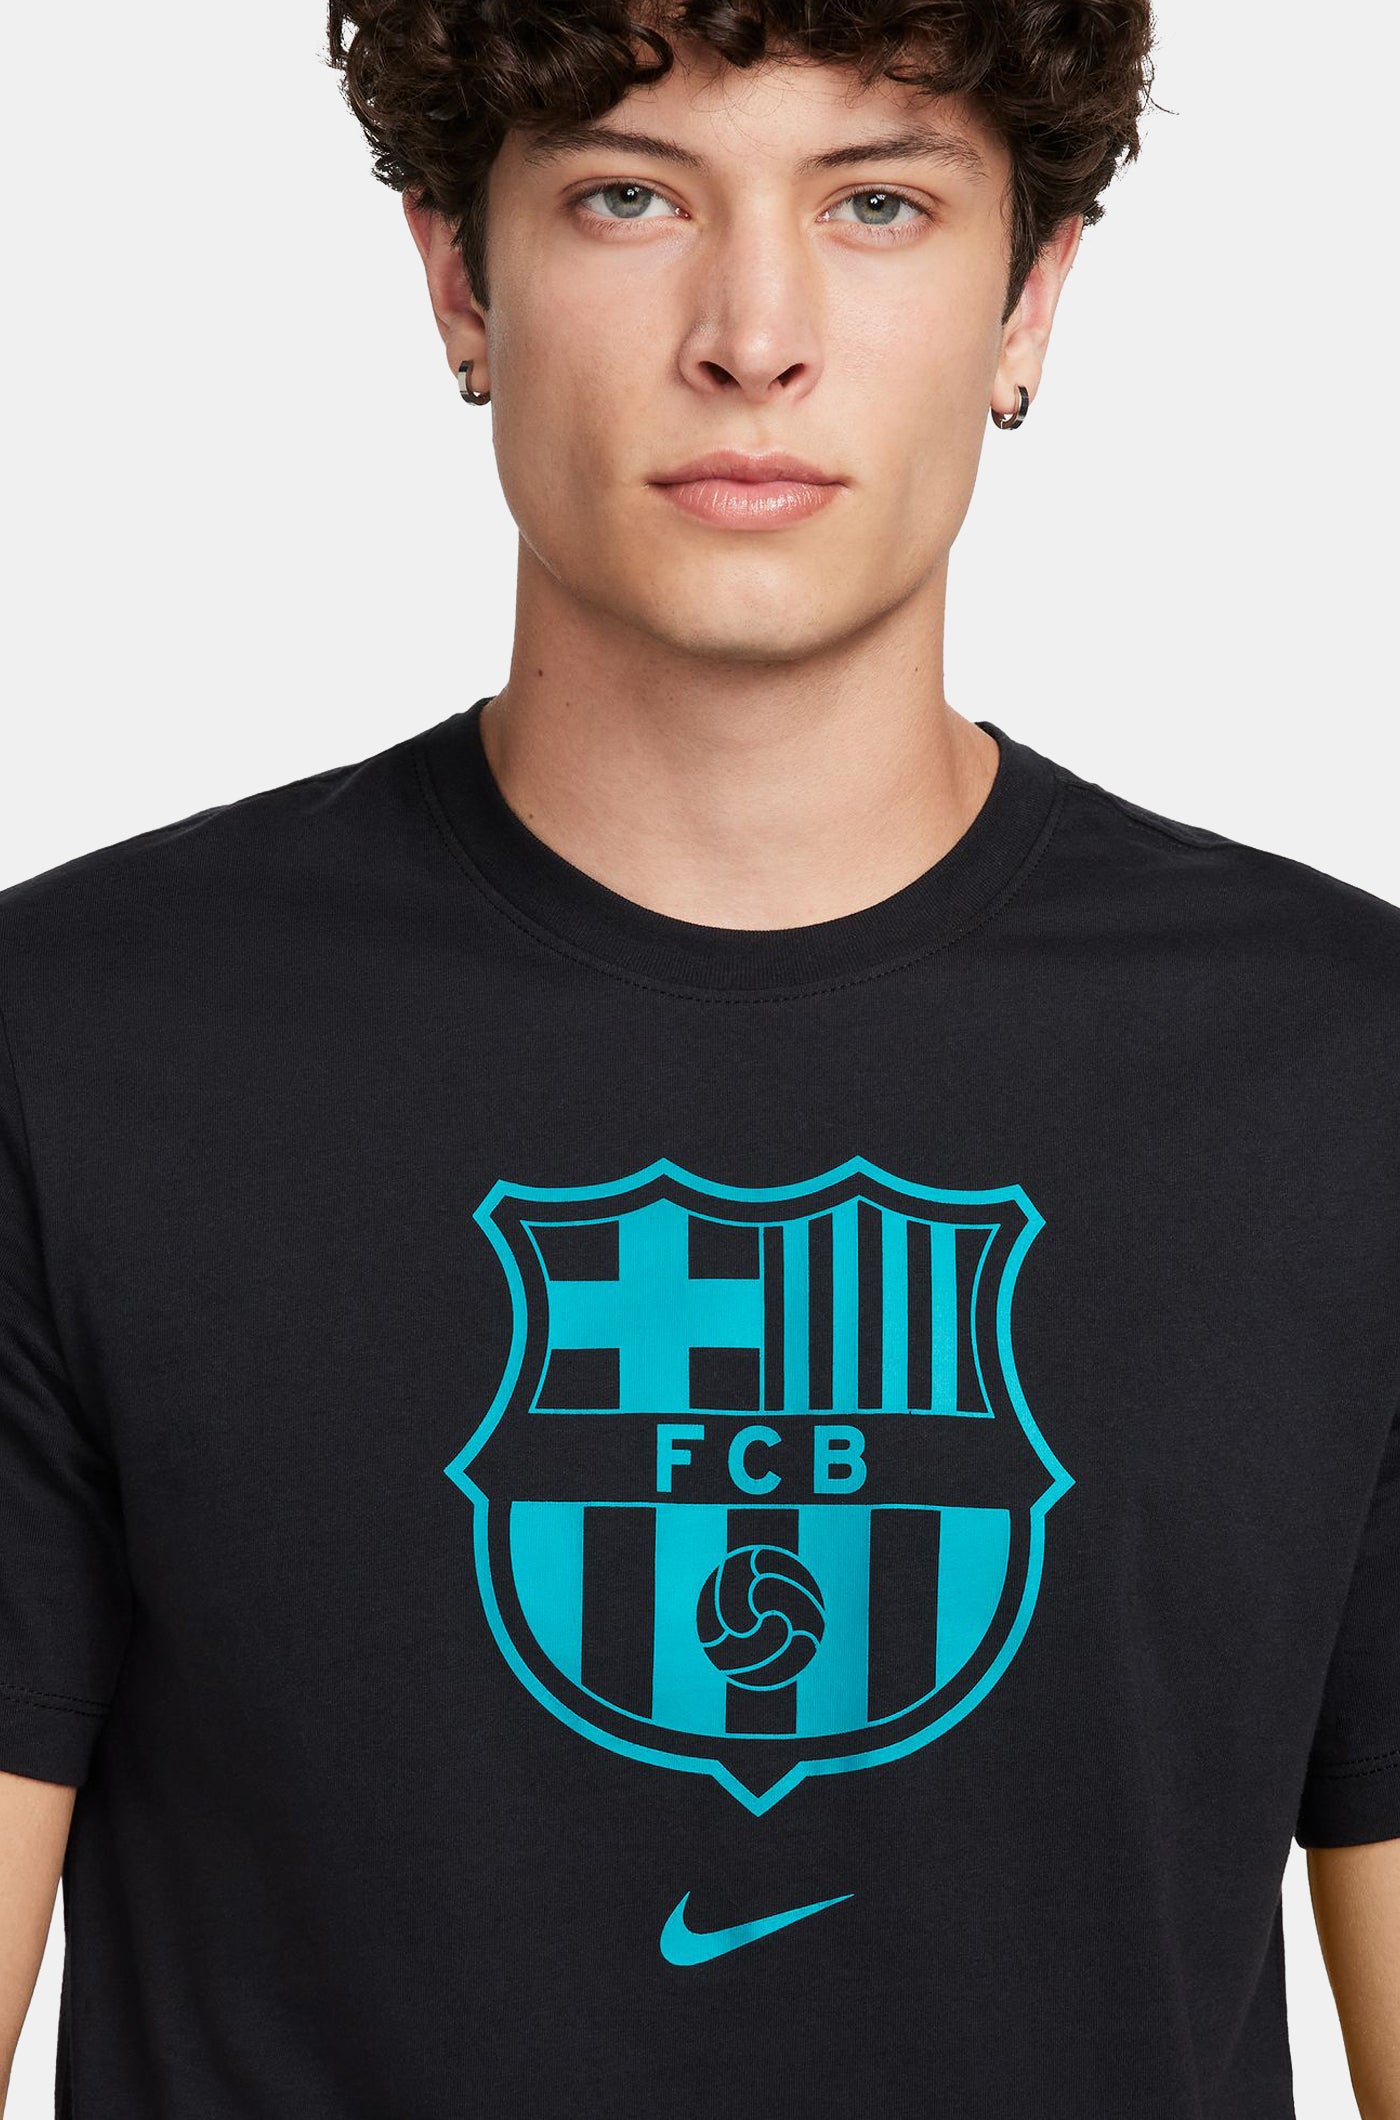 FC Barcelona  Las primeras imágenes de la camiseta negra para la